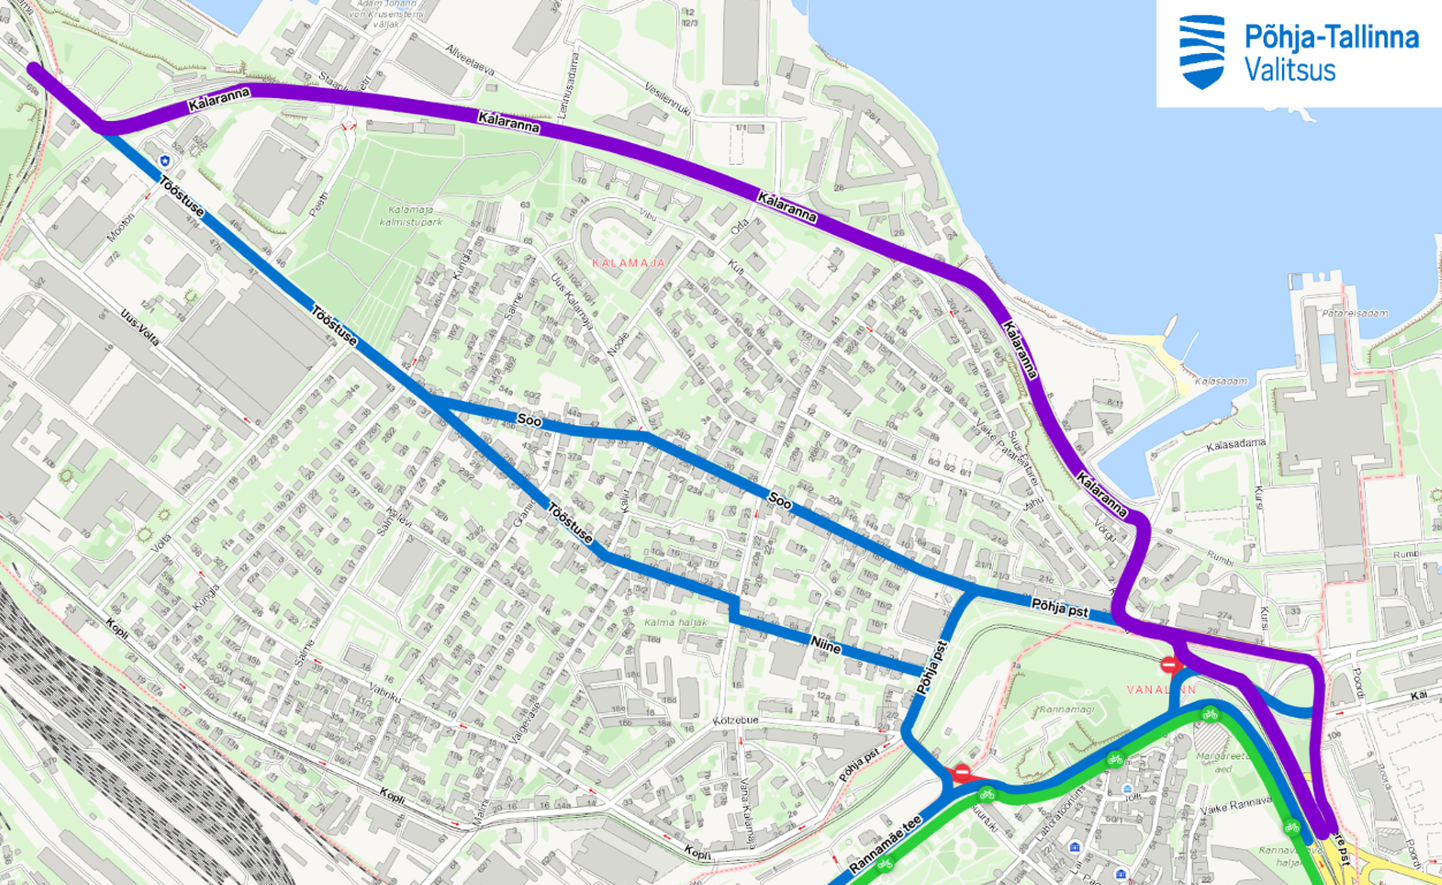 План изменений организации дорожного движения в Пыхья-Таллинне и Кесклинне.